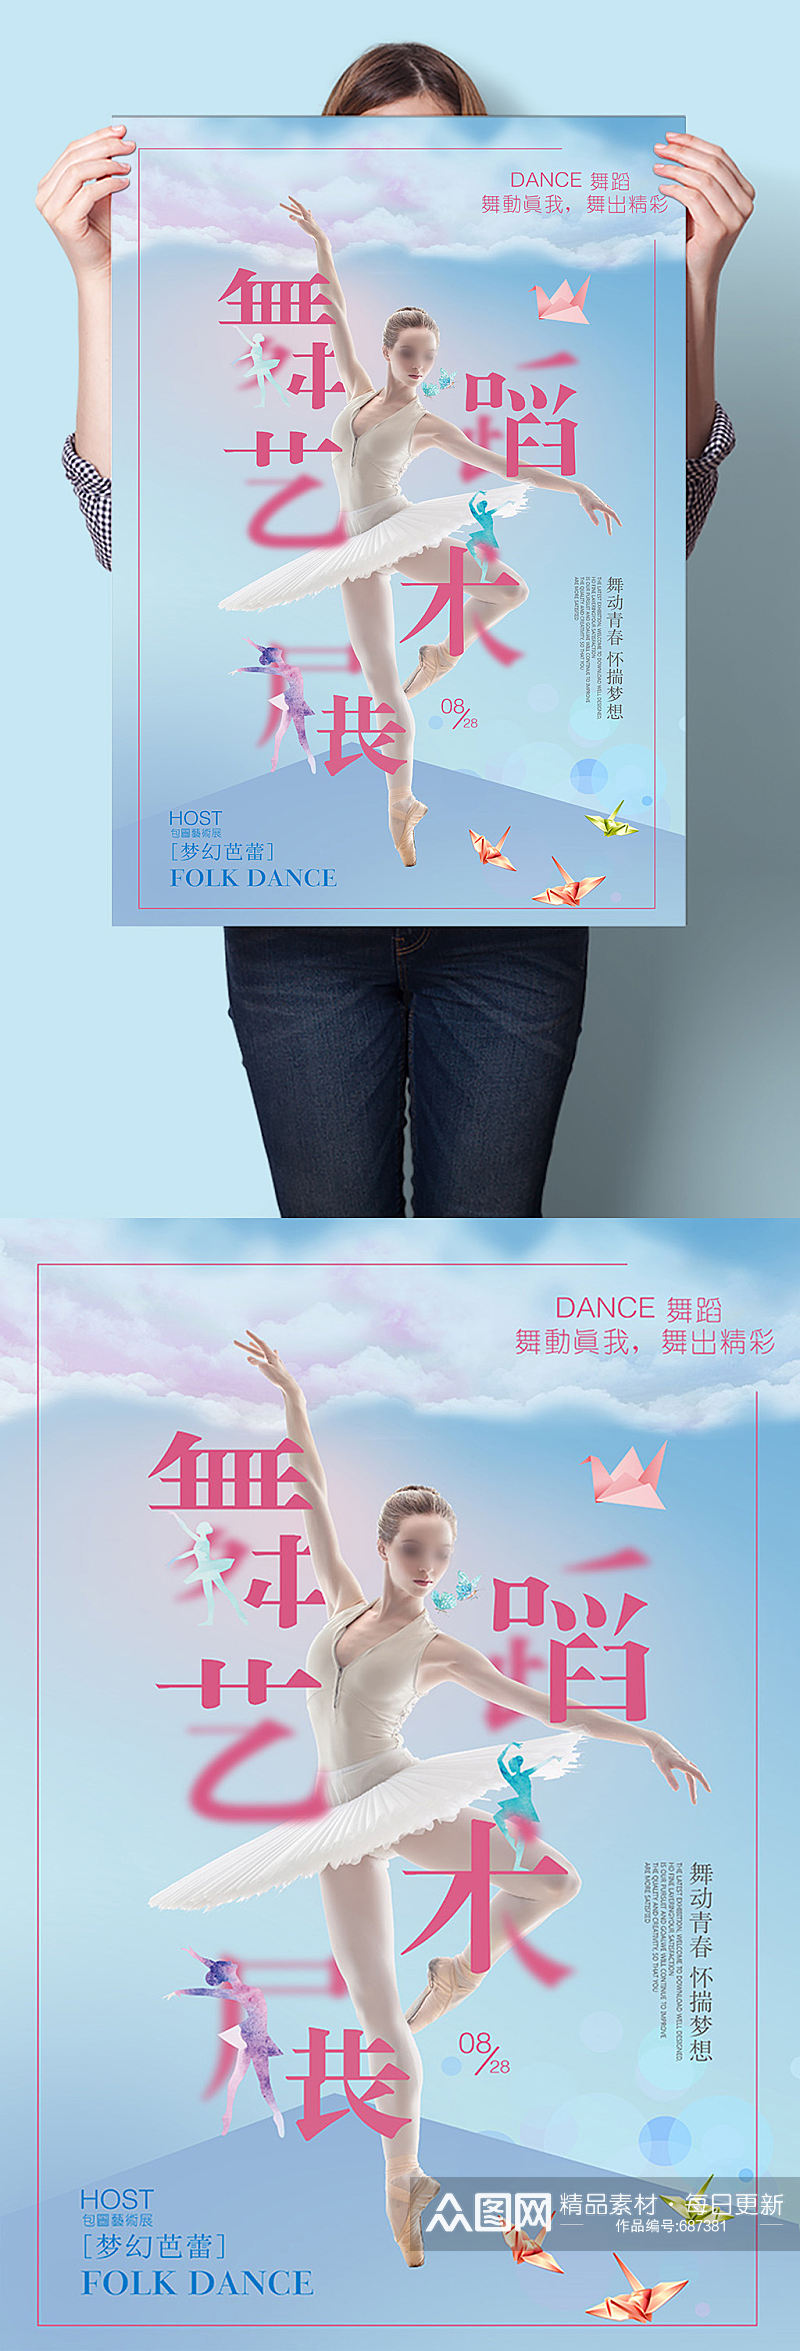 舞蹈艺术展比赛舞蹈培训班招生报名海报素材